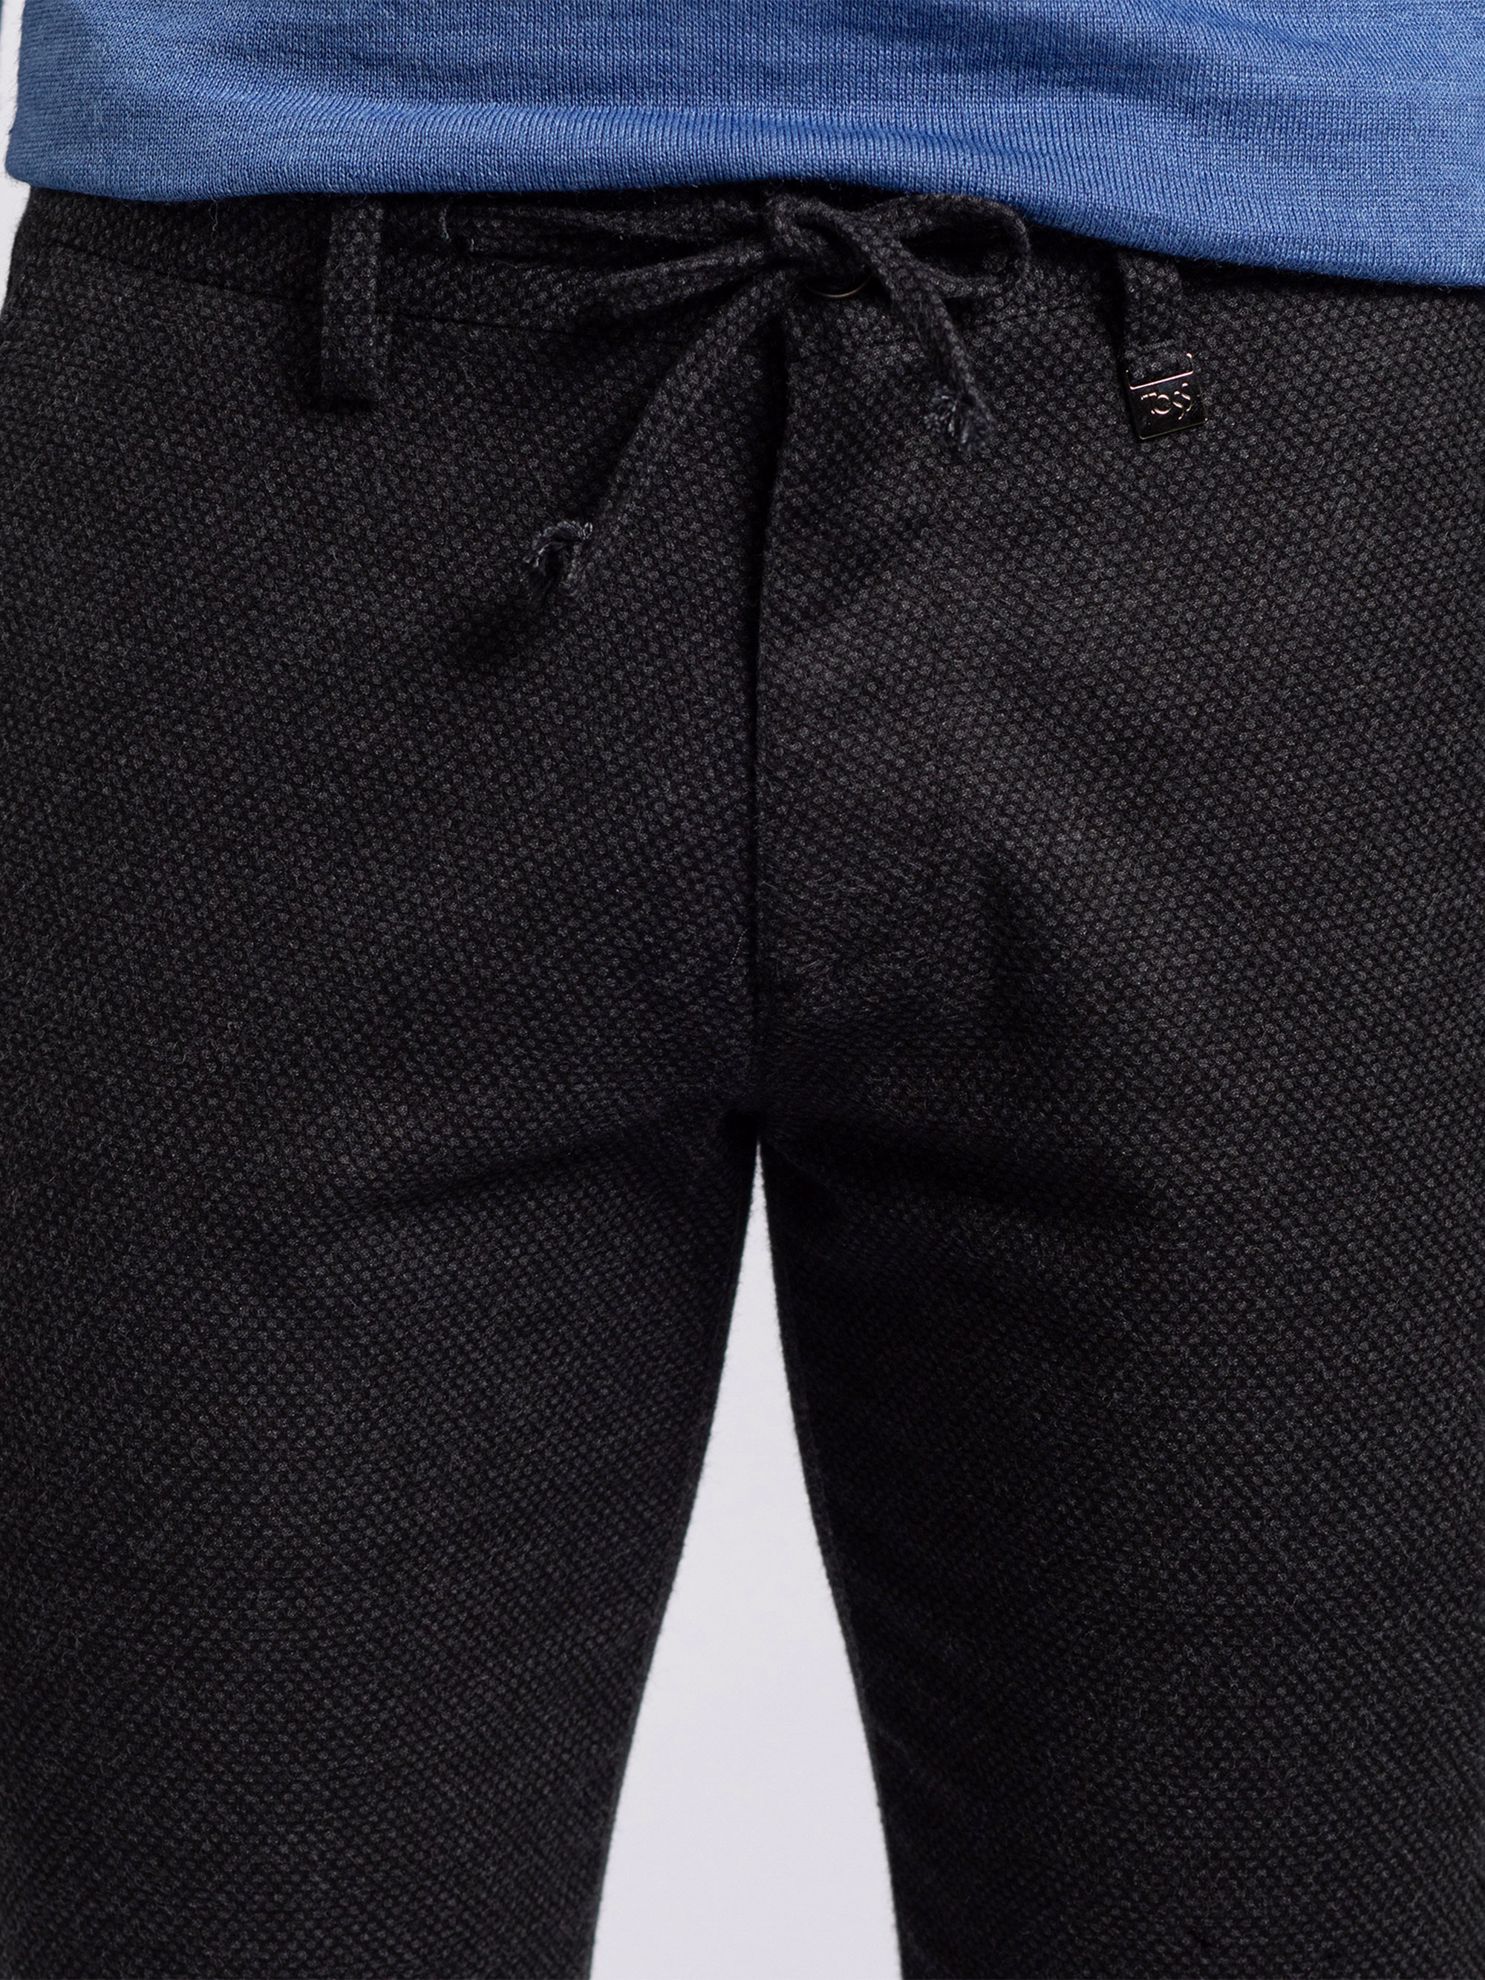 Toss Erkek 6 Drop Pantolon-Antrasit. ürün görseli